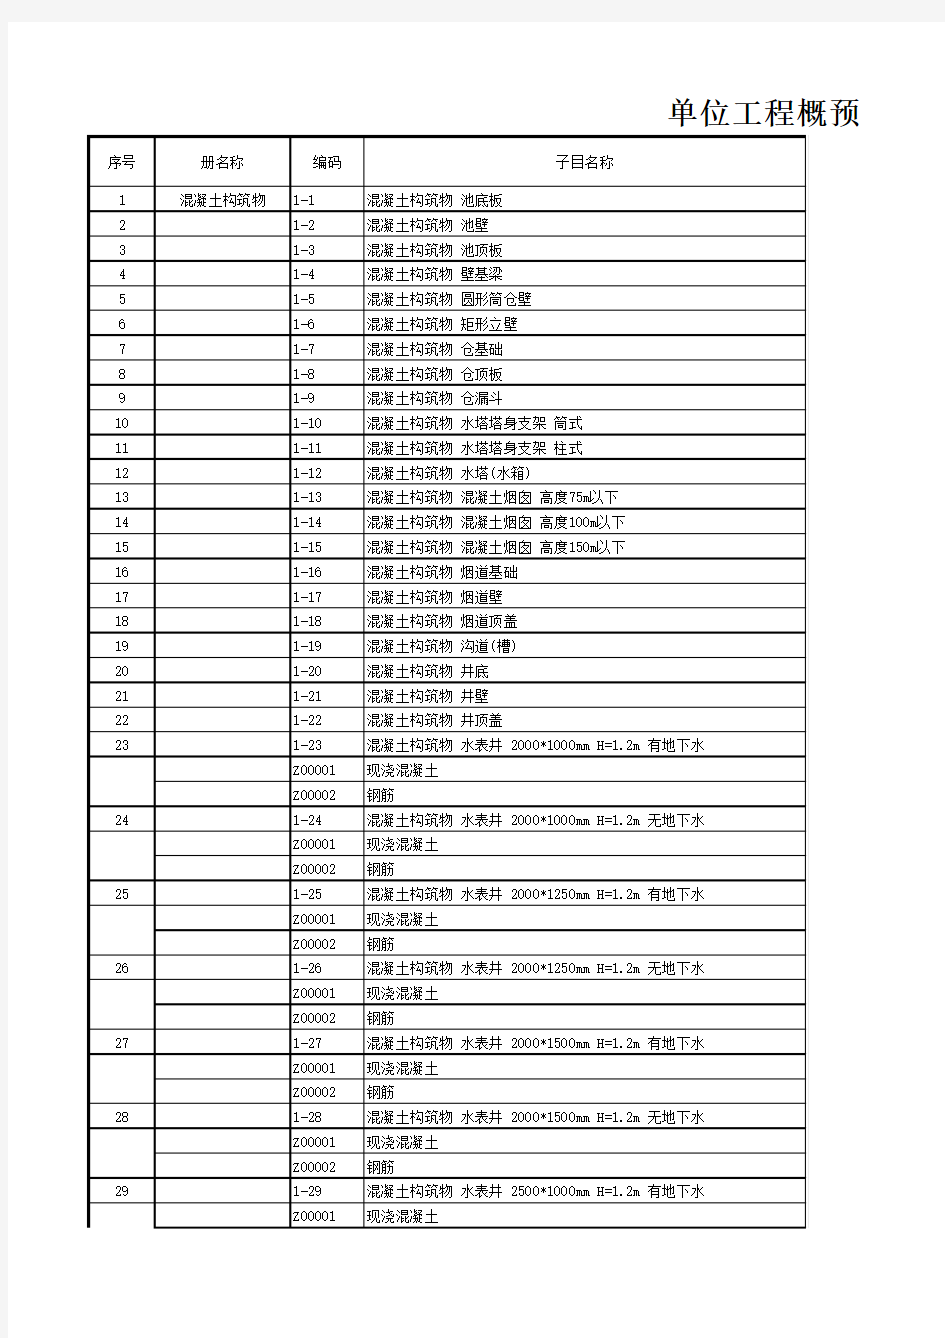 北京市建筑工程预算定额2012年(构筑物工程)